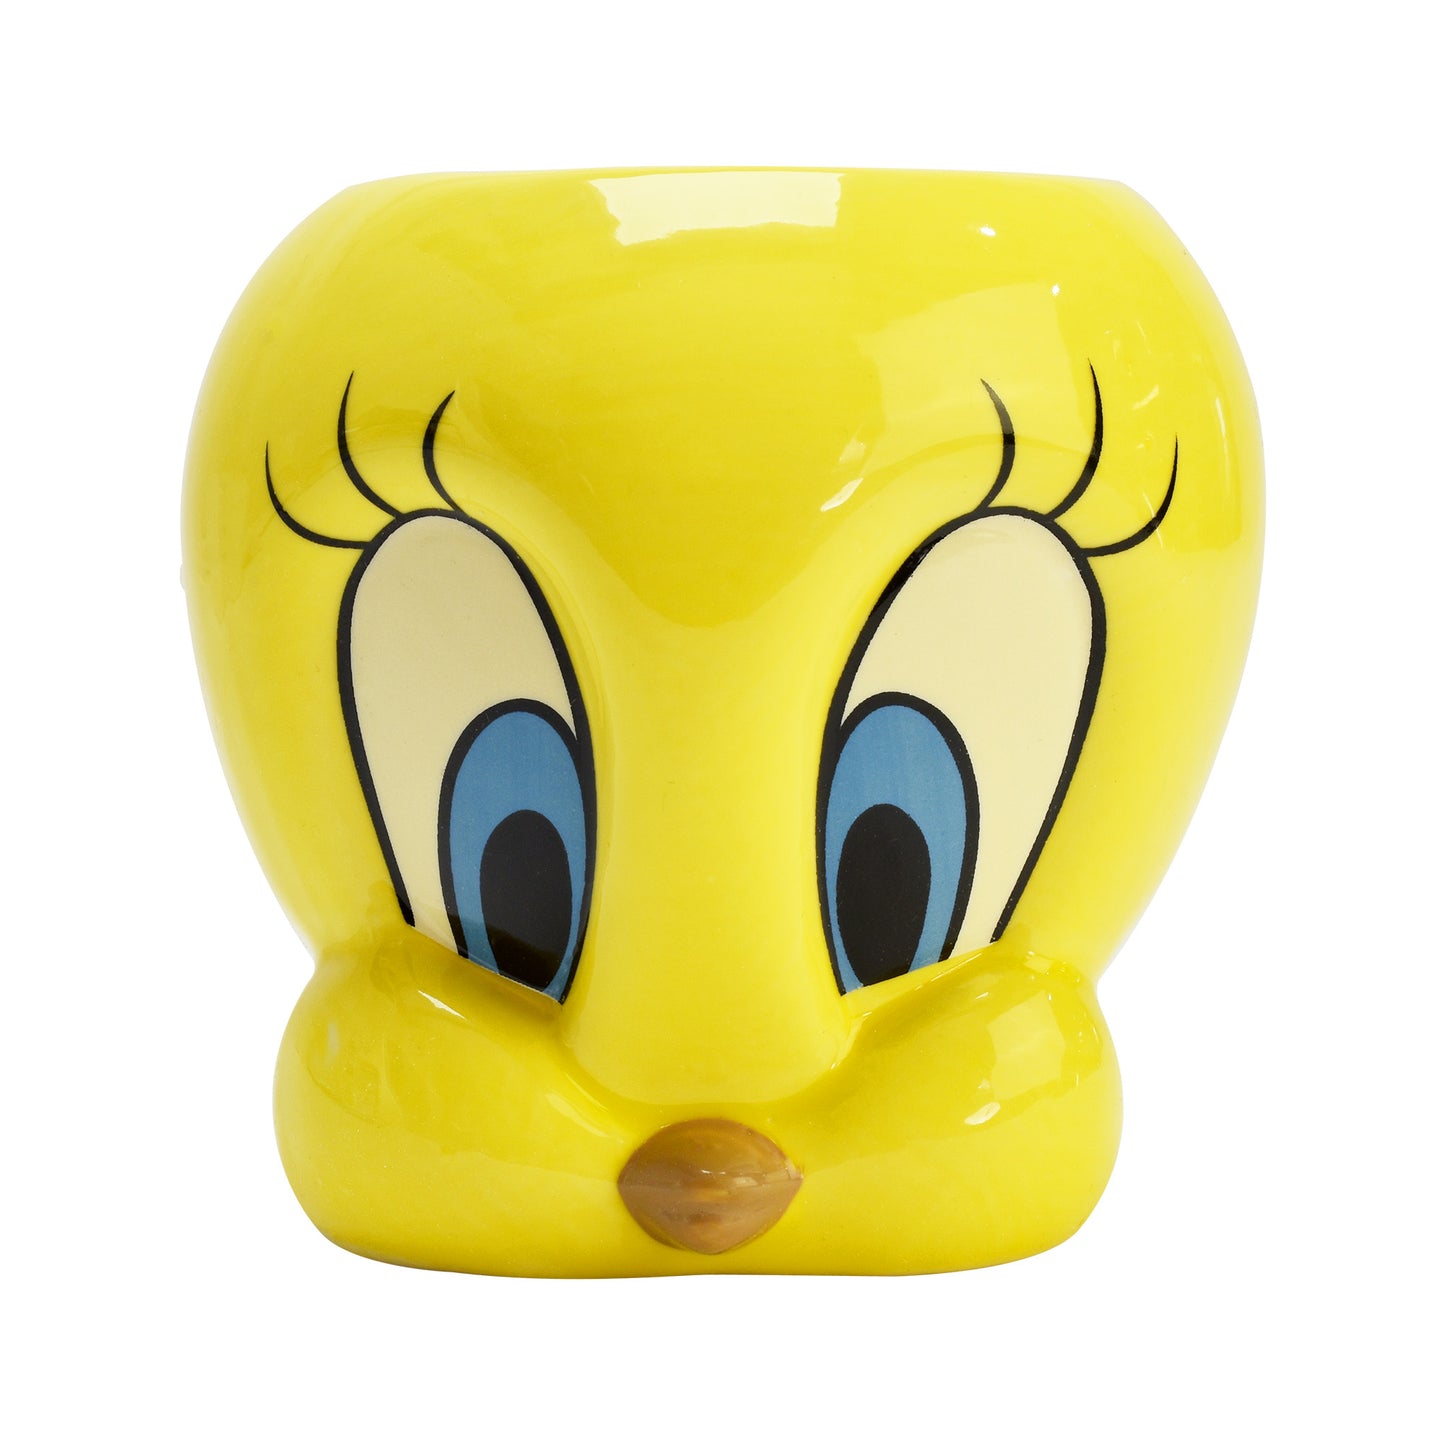 Looney Tunes 3D Tweety Pie Character Pen Pot